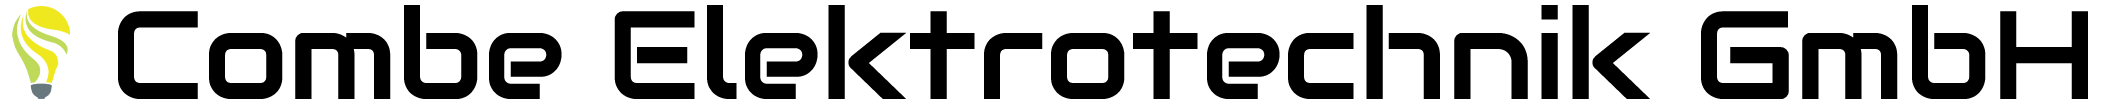 Logo pur2